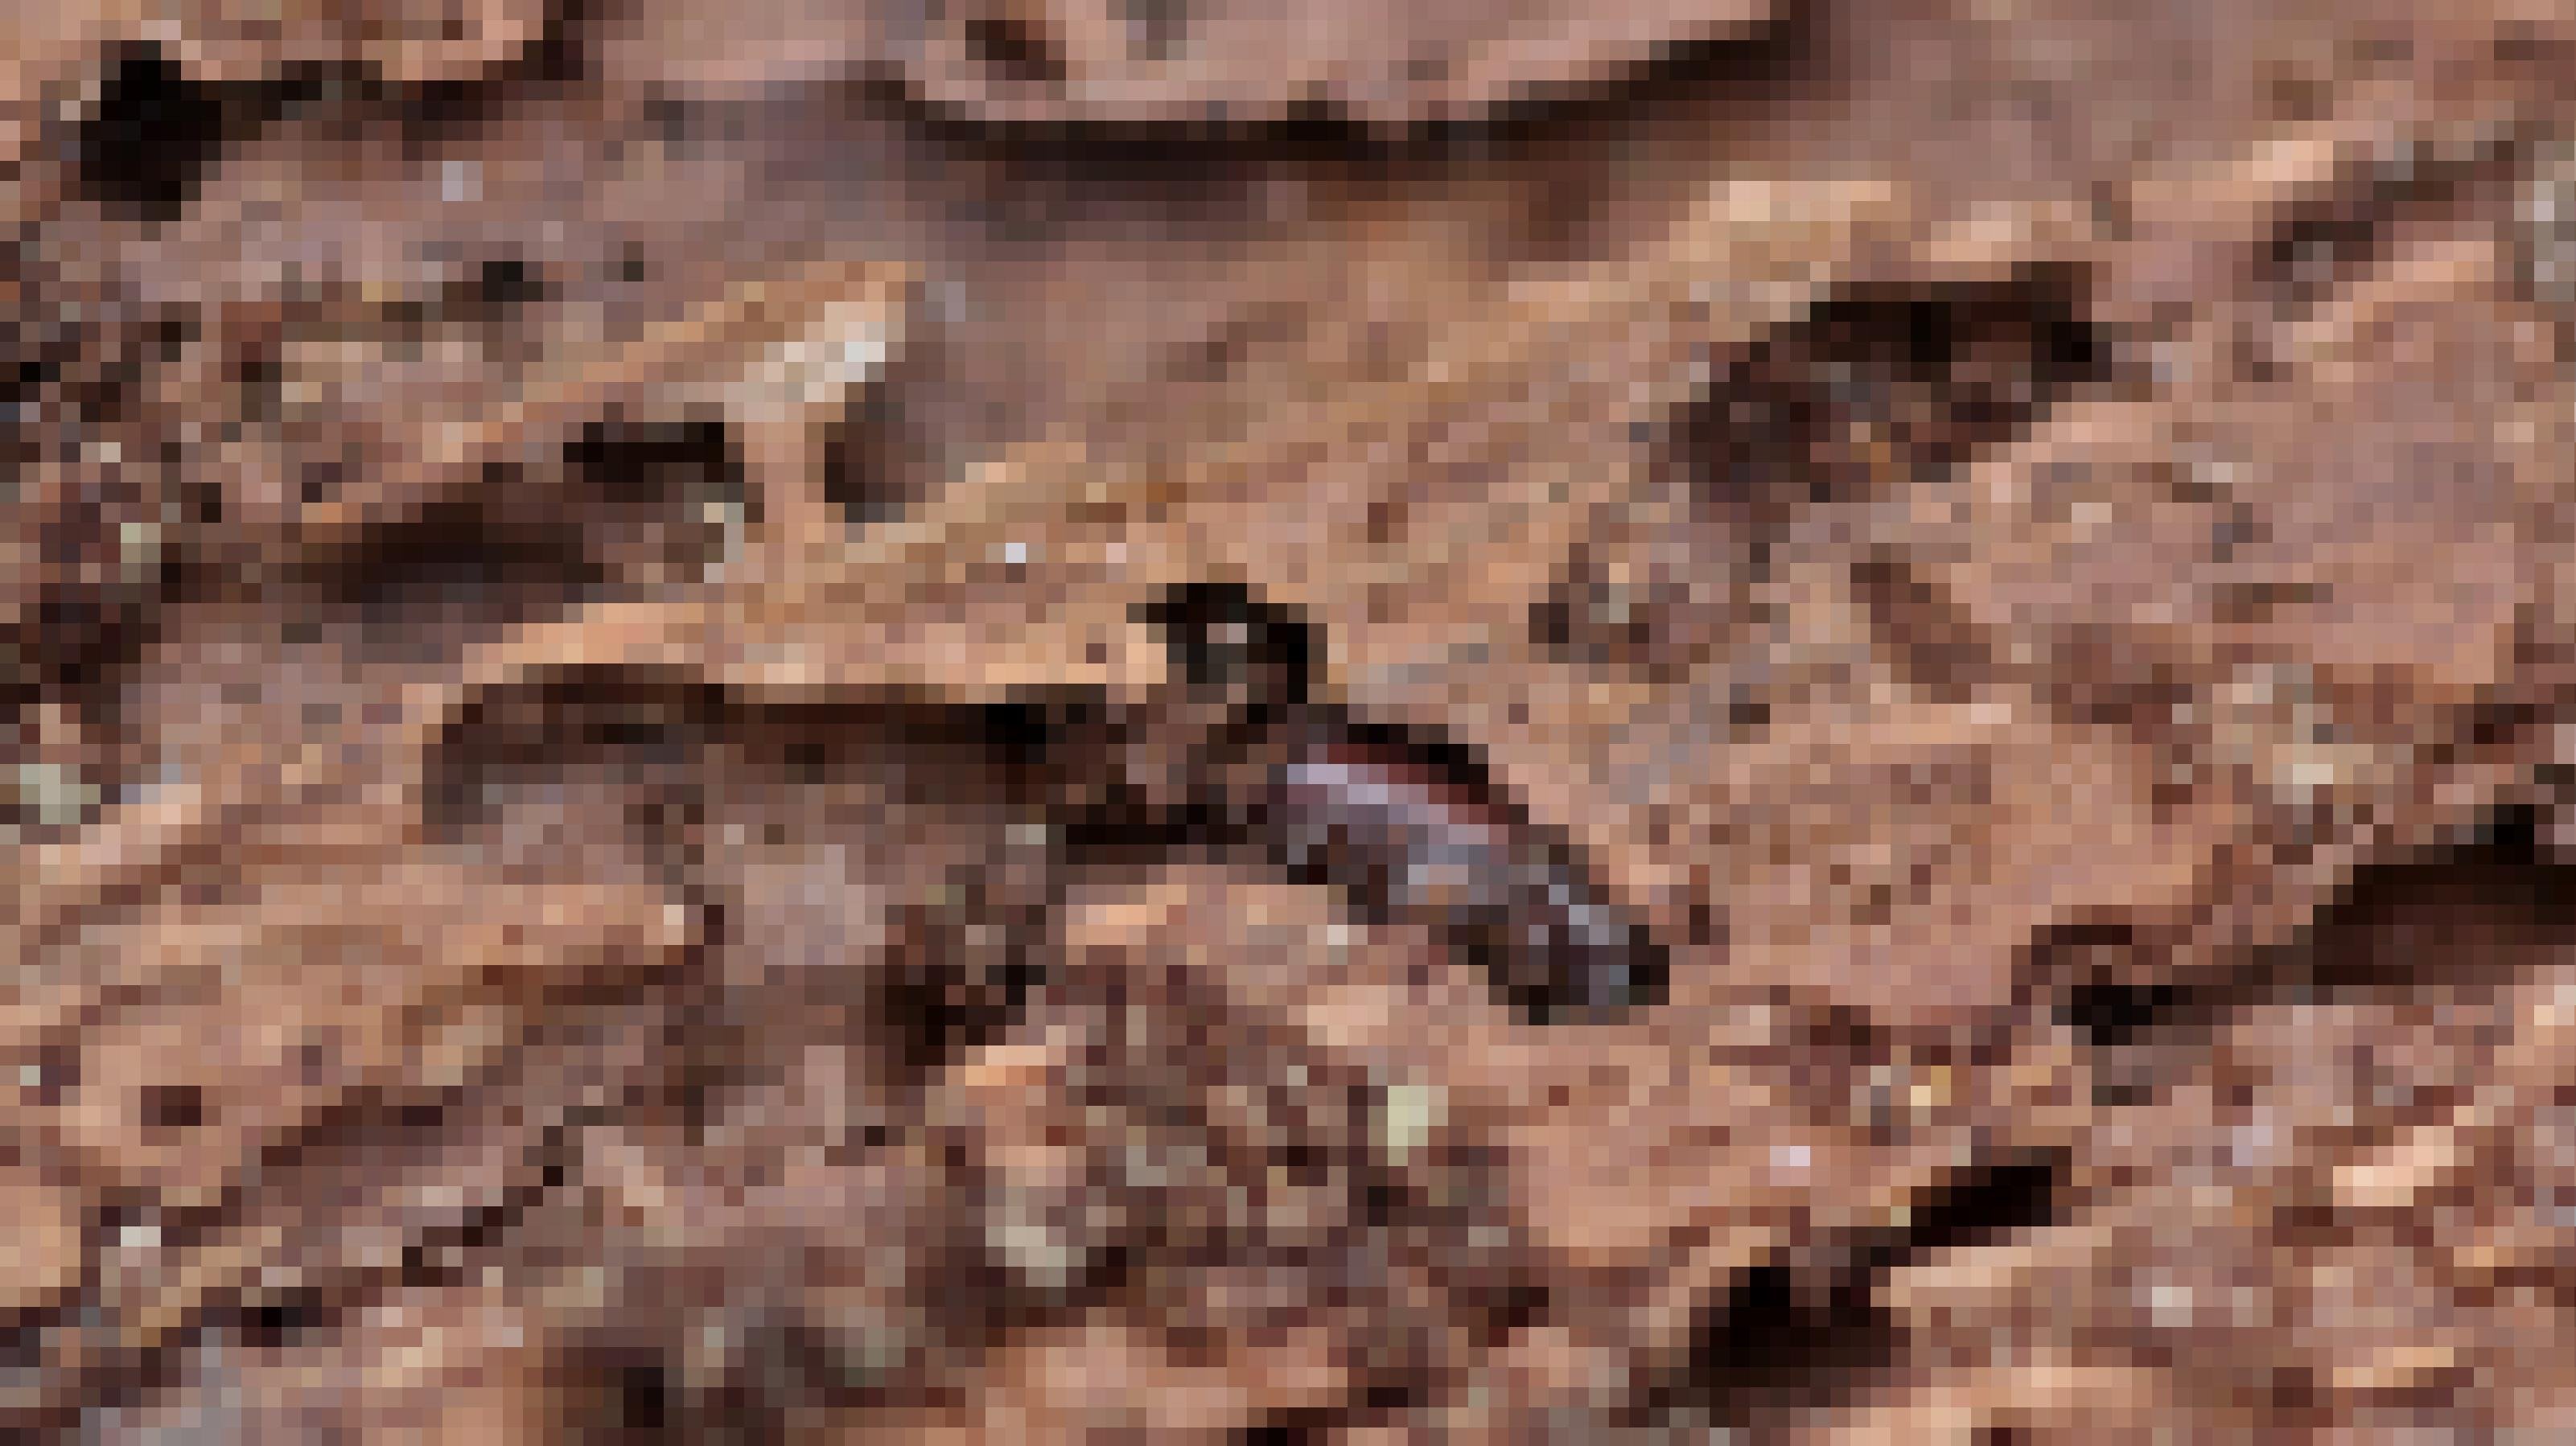 Dunkelbrauner Käfer ruht einer Kammer, die am Ende eines in Holz gebohrten Ganges liegt.